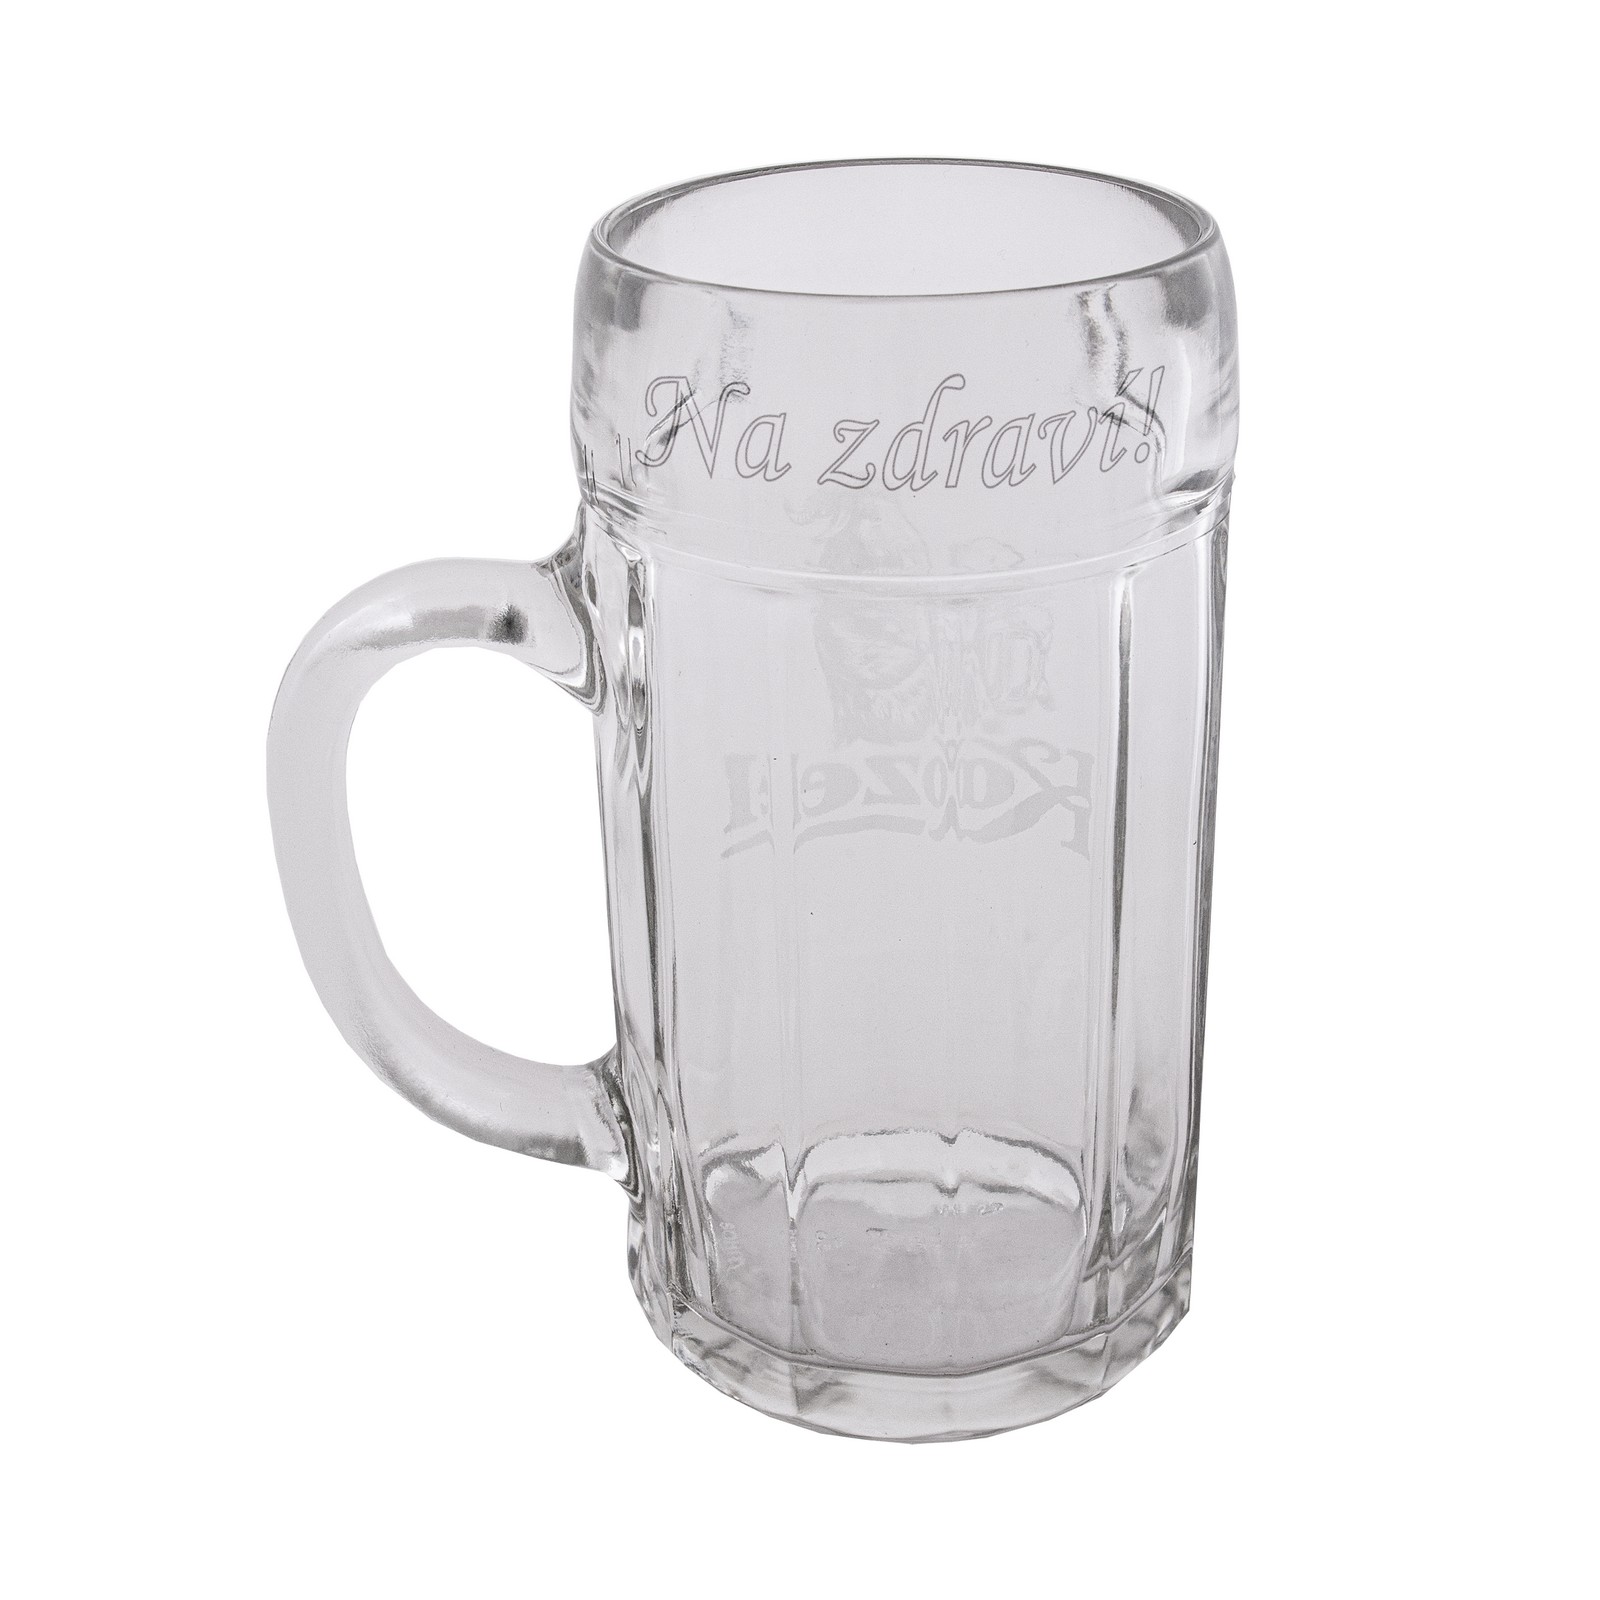 1 l Kozel beer mug with inscription